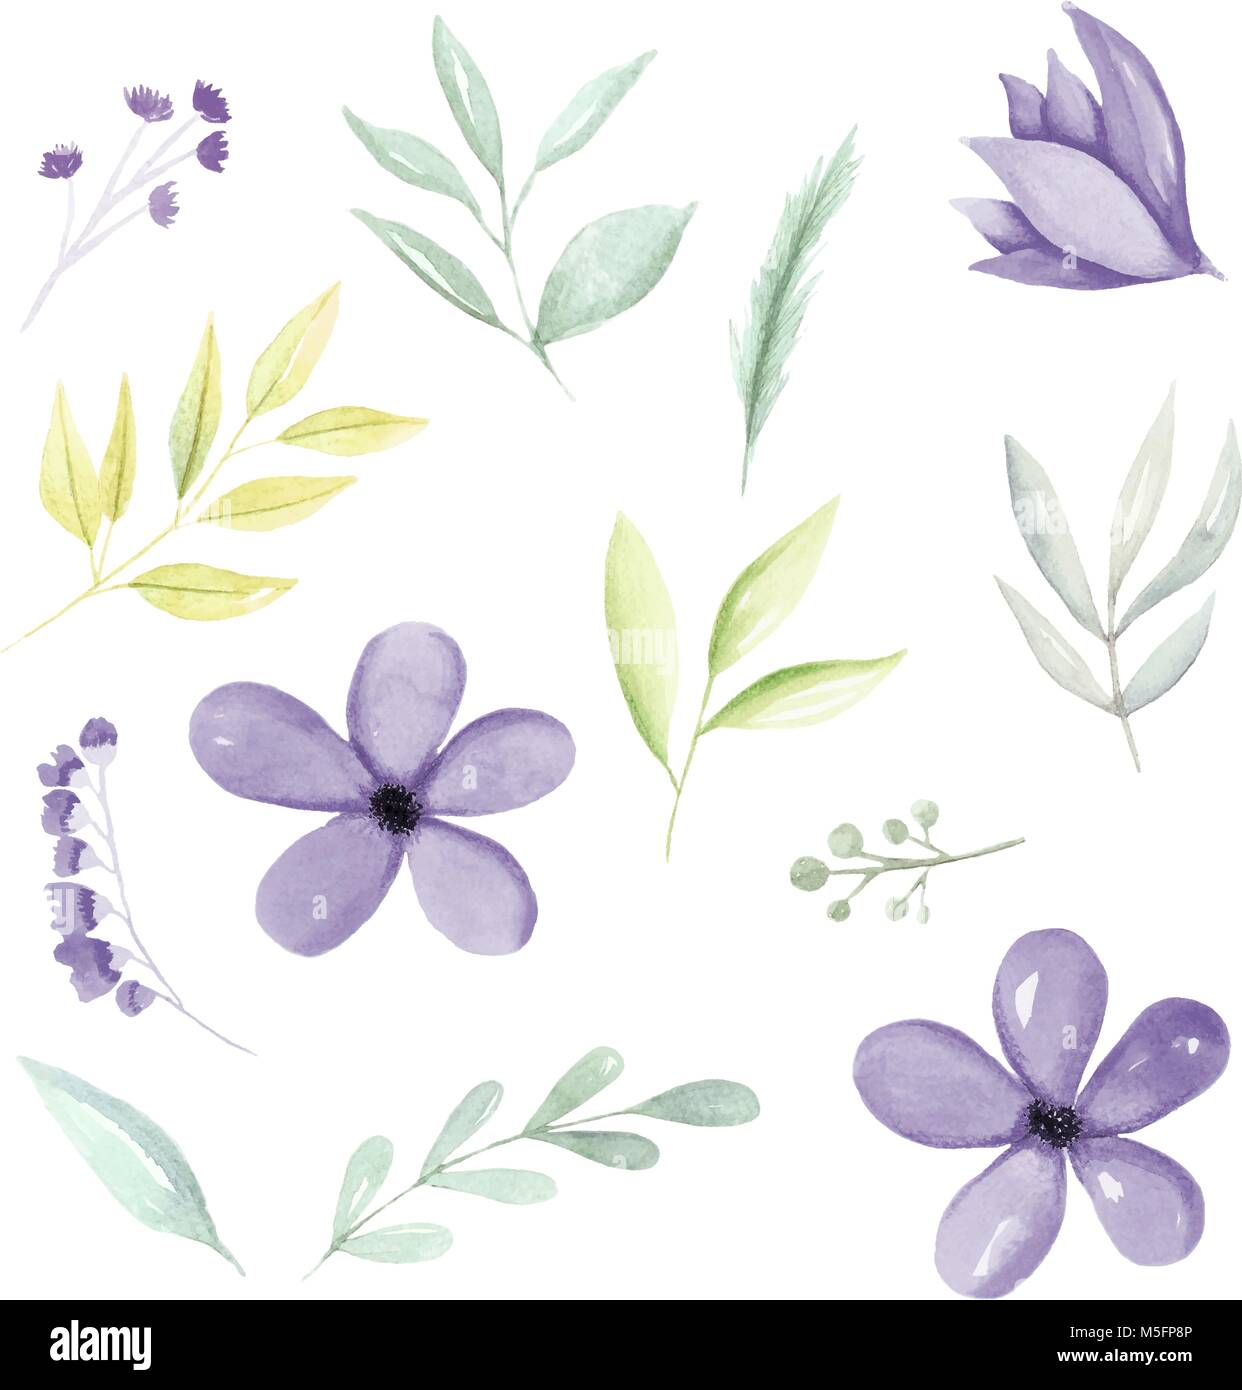 Viola acquerello elementi botanici, fiori, foglie e rami disegnati a mano. Acquerello Illustrazione disegnata a mano. Illustrazione Vettoriale